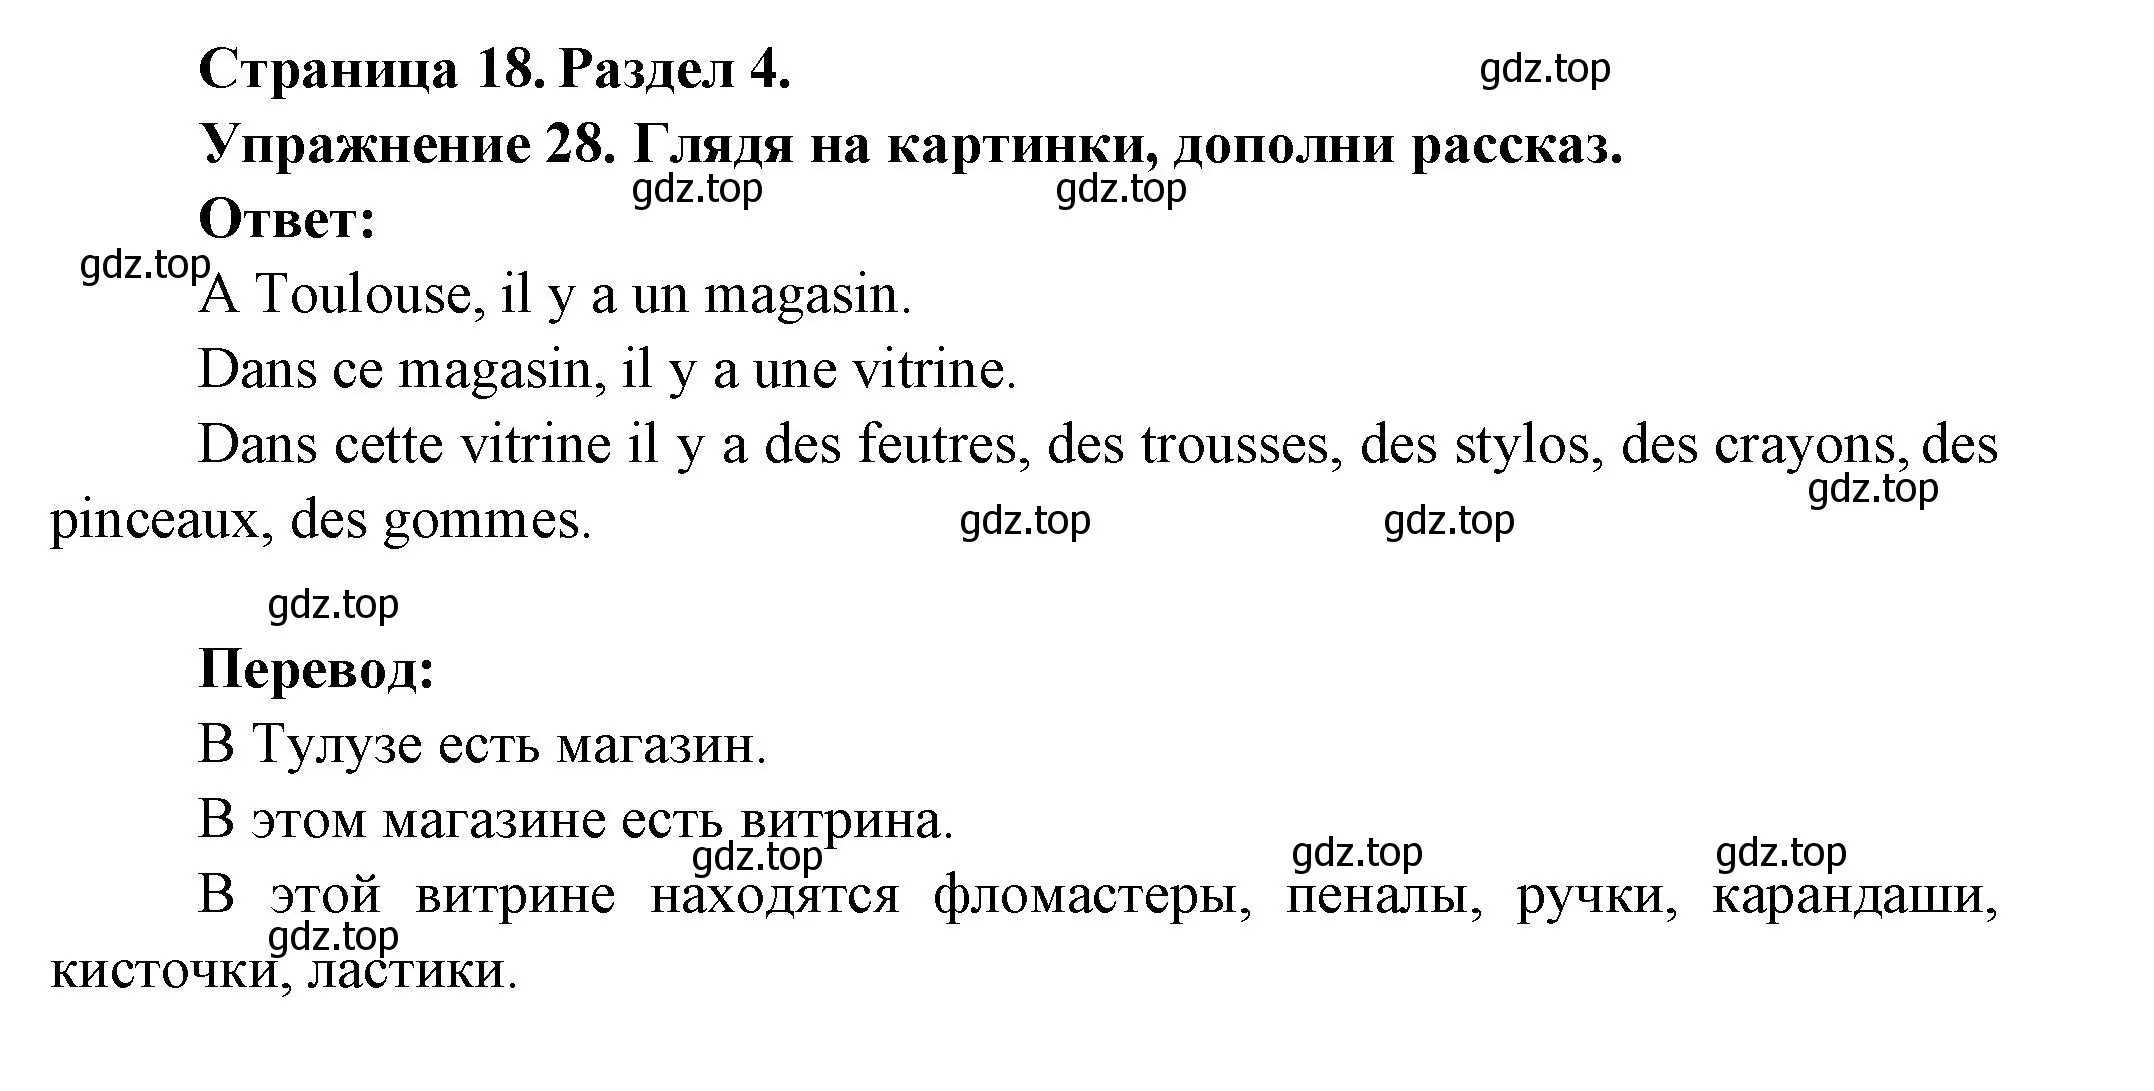 Решение номер 28 (страница 18) гдз по французскому языку 5 класс Береговская, Белосельская, учебник 2 часть